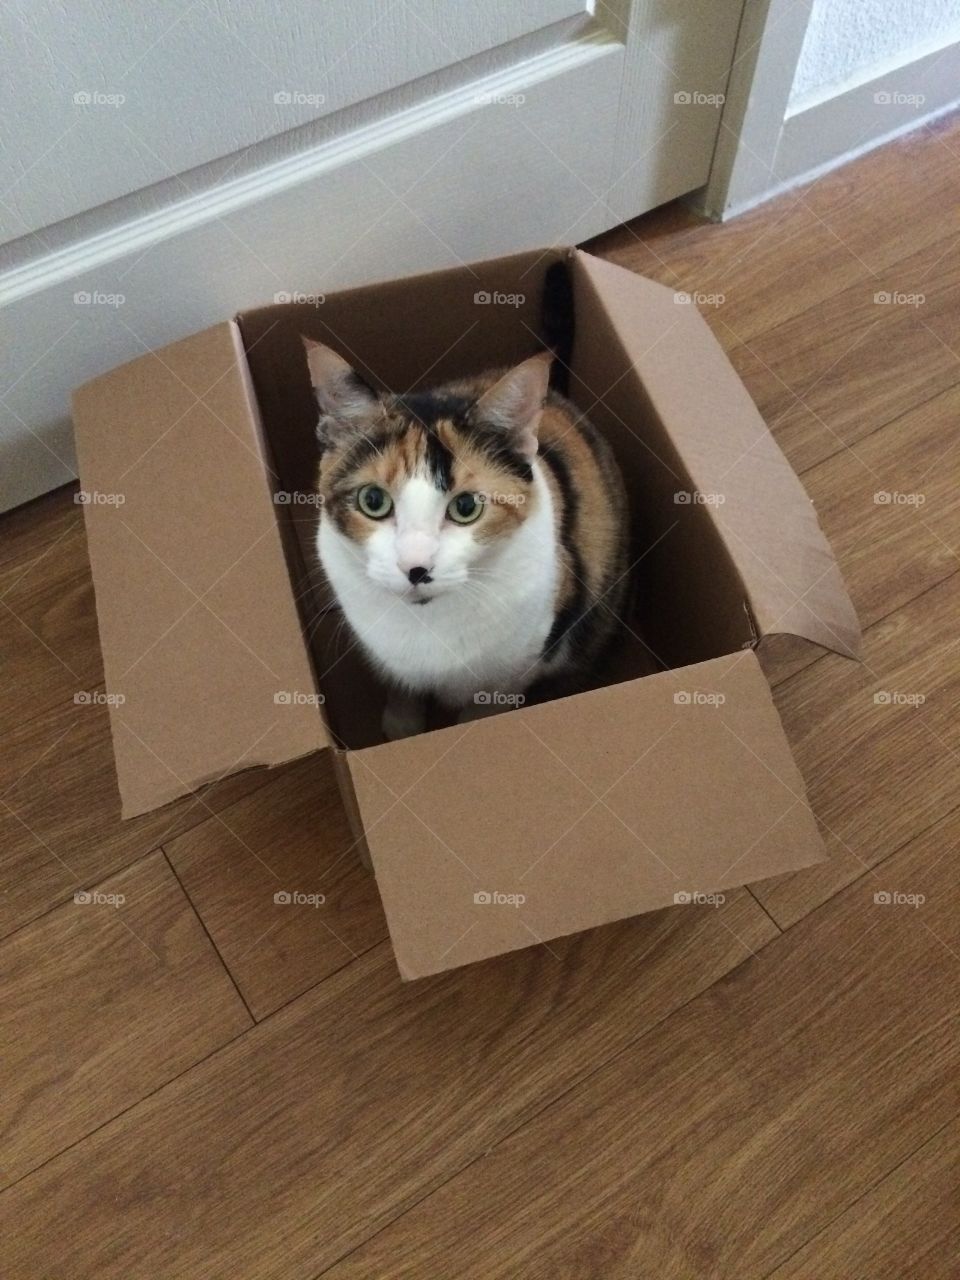 Calico in a box. My calico cat in a box. 